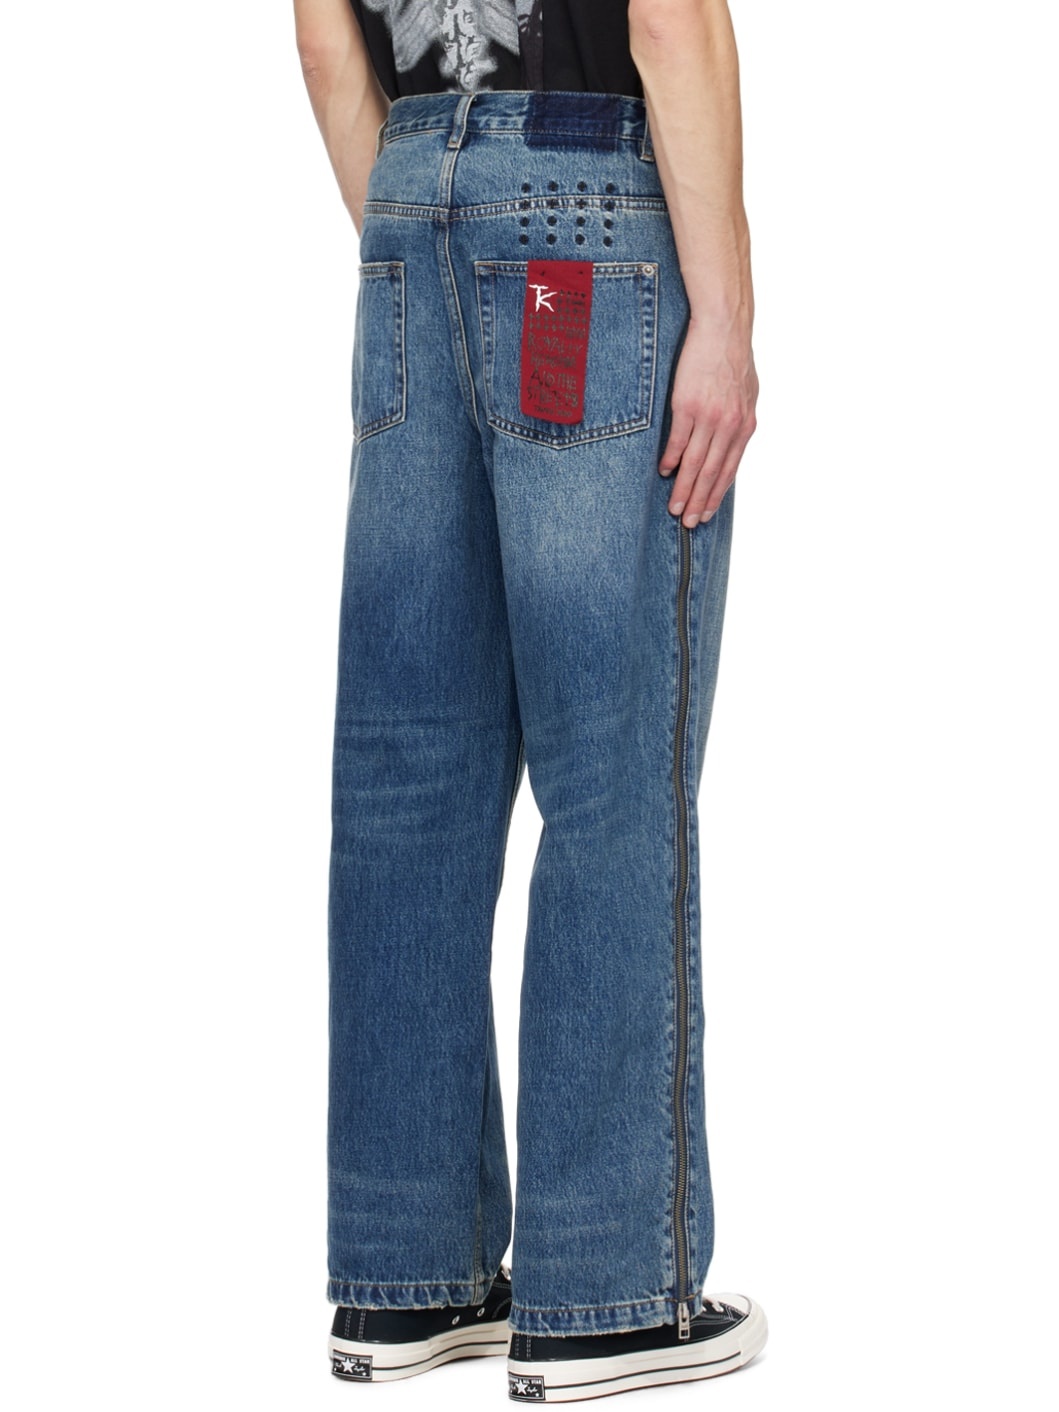 Indigo Trippie Redd Edition Maxx Zip Trip Jeans - 3